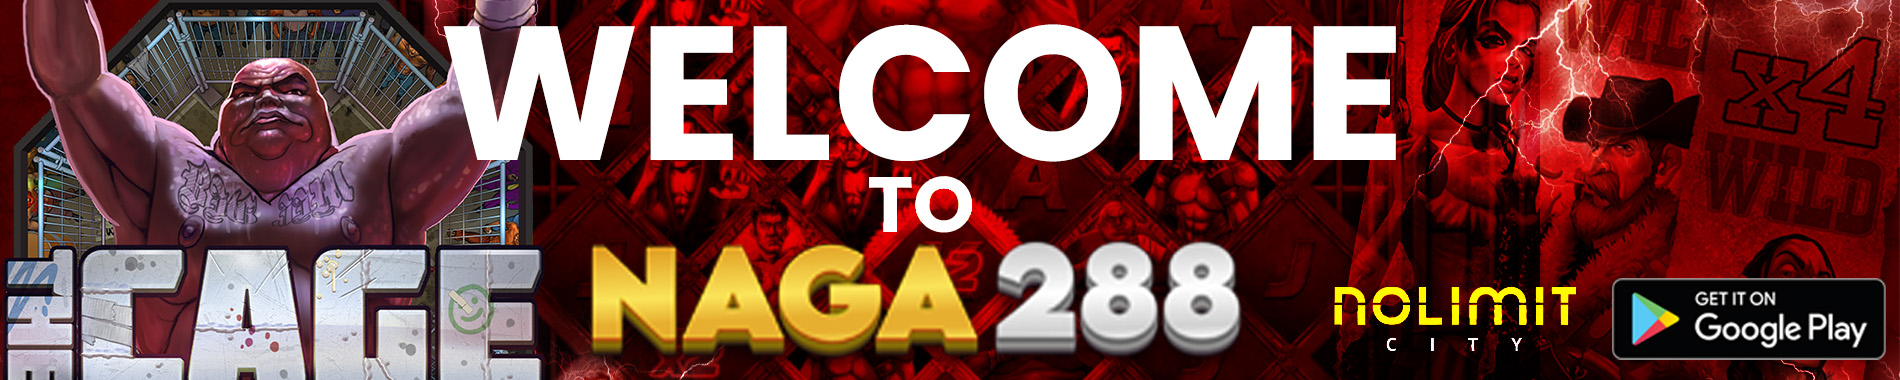 Naga288 - Selamat datang di Situs Naga288 Slot Gacor